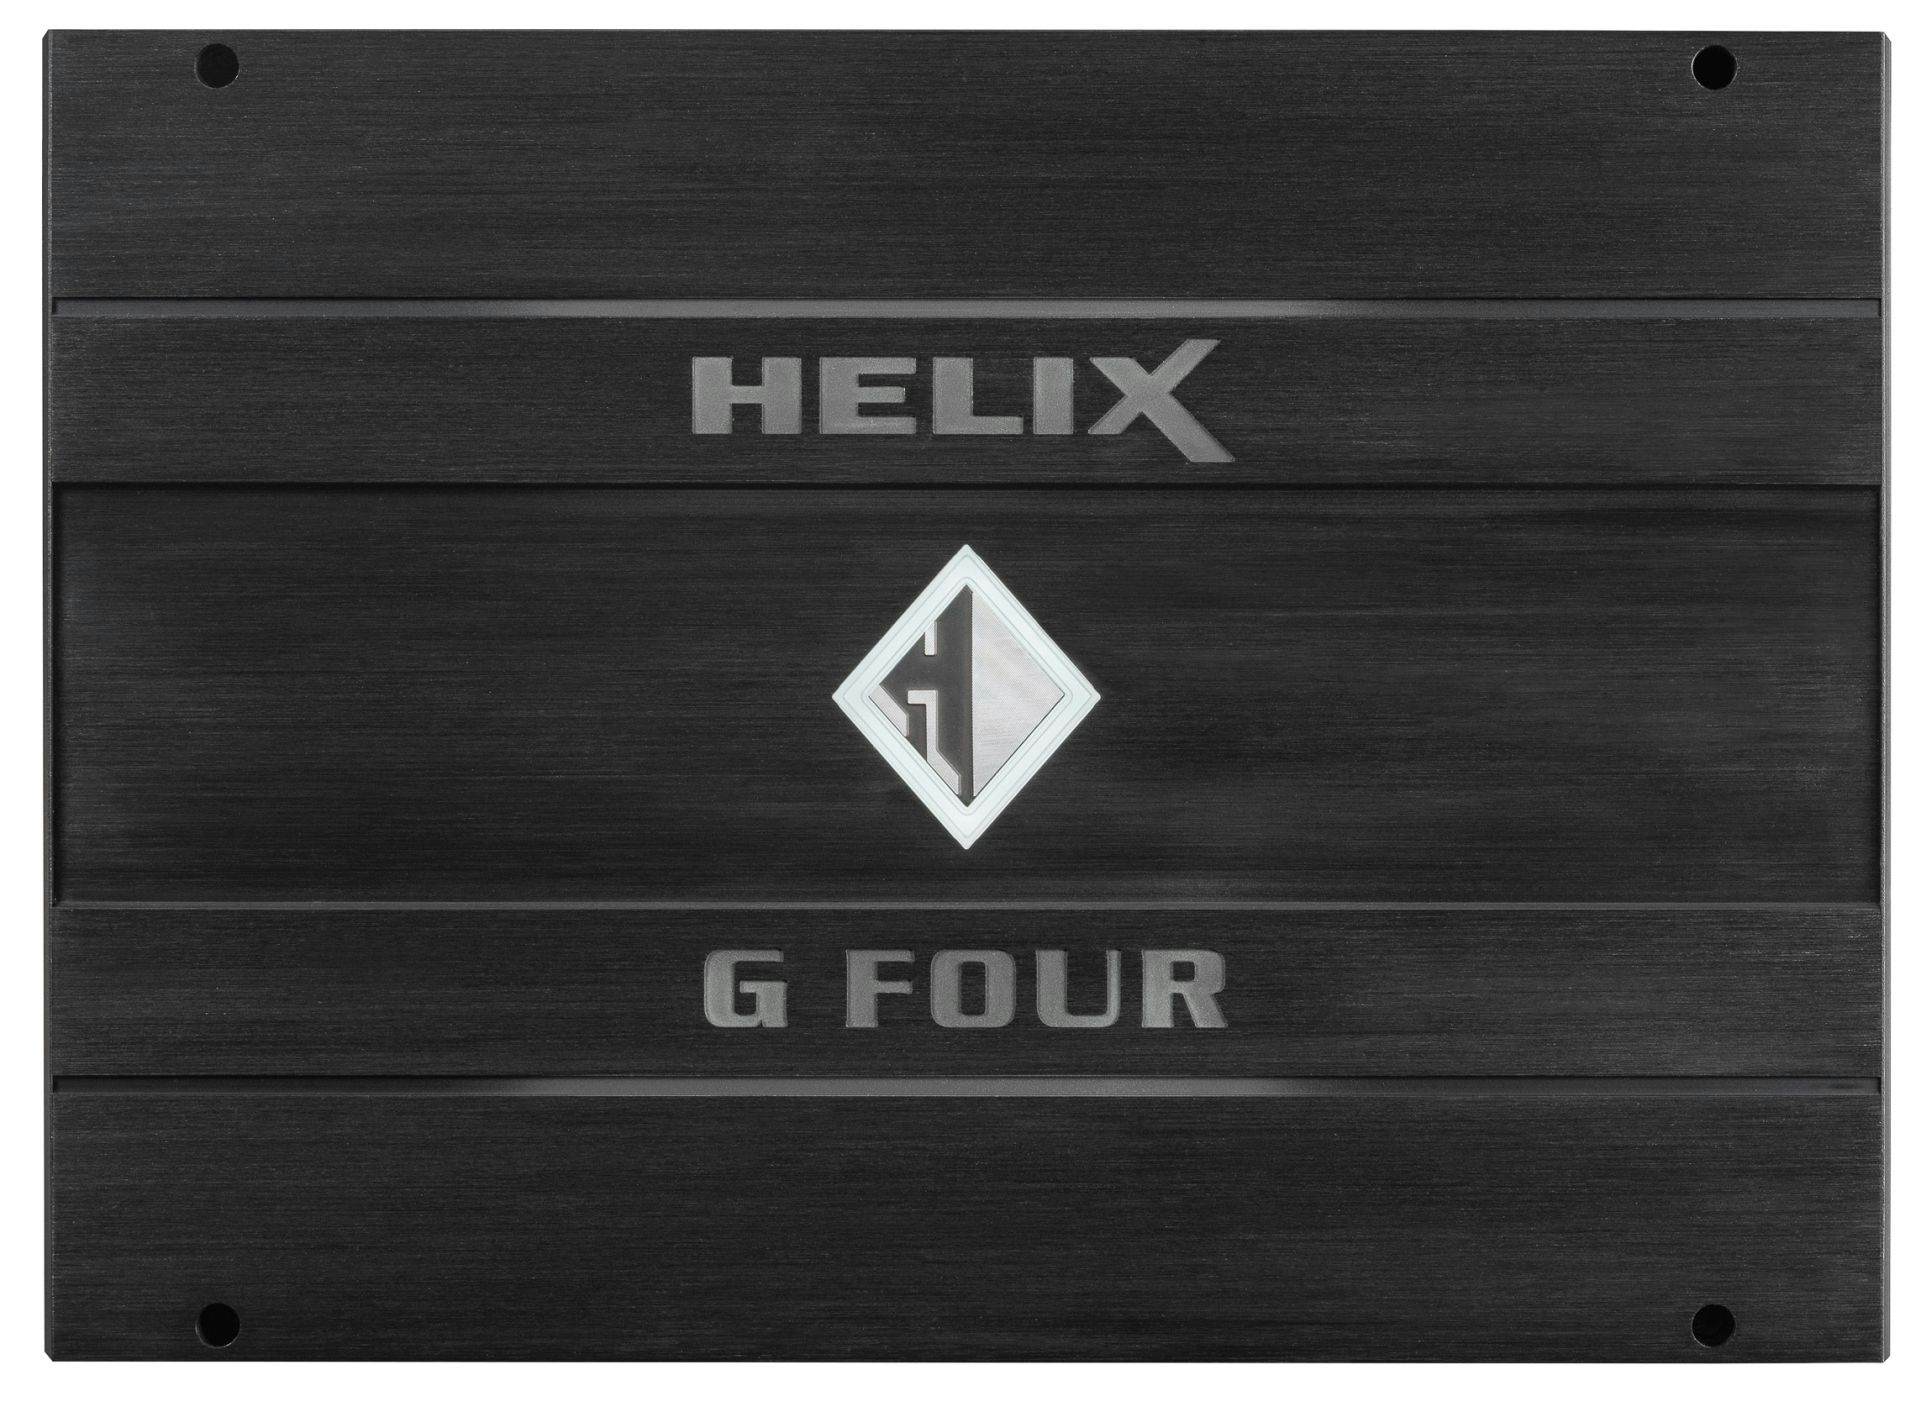 Avtoojačevalec Helix G FOUR (4-kanalni ojačevalec)